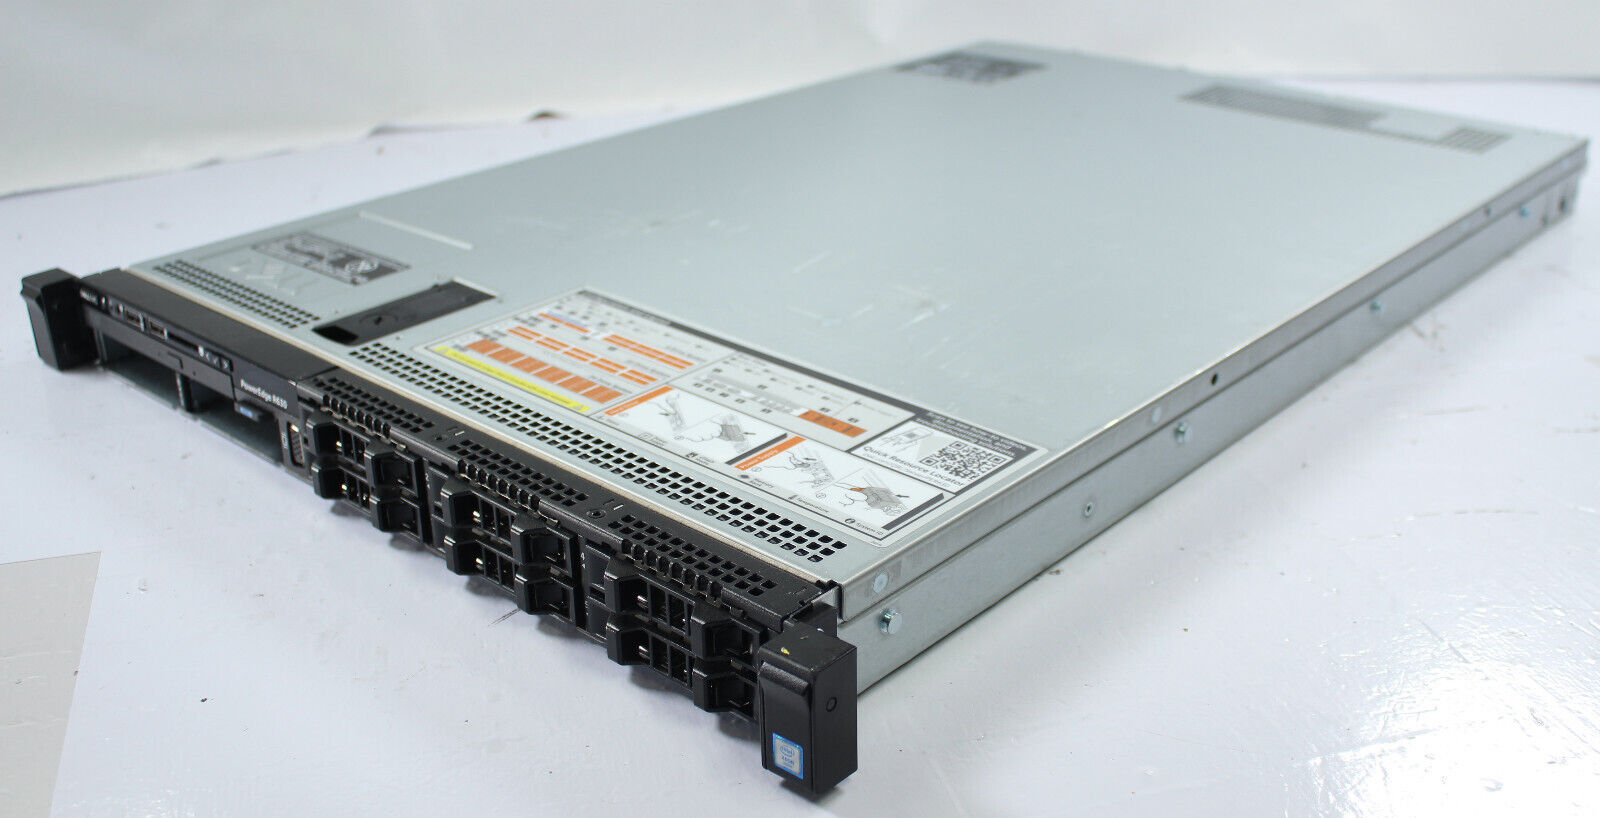 Dell PowerEdge R630 2*Intel Xeon 2687W 16GB RAM No HDD tested with latest BIOS